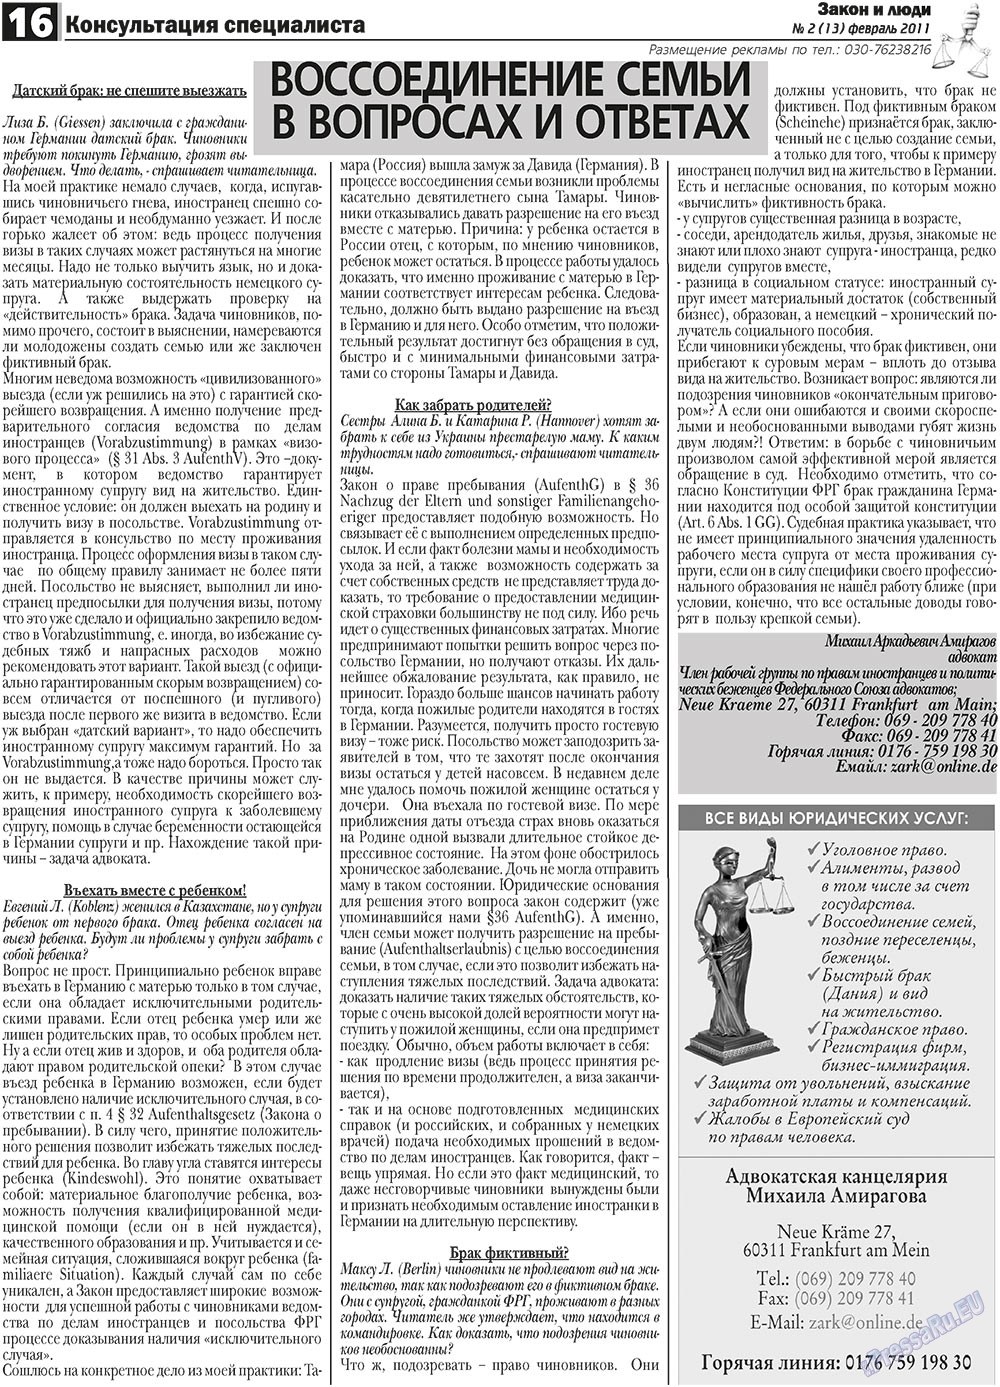 Закон и люди (газета). 2011 год, номер 2, стр. 16